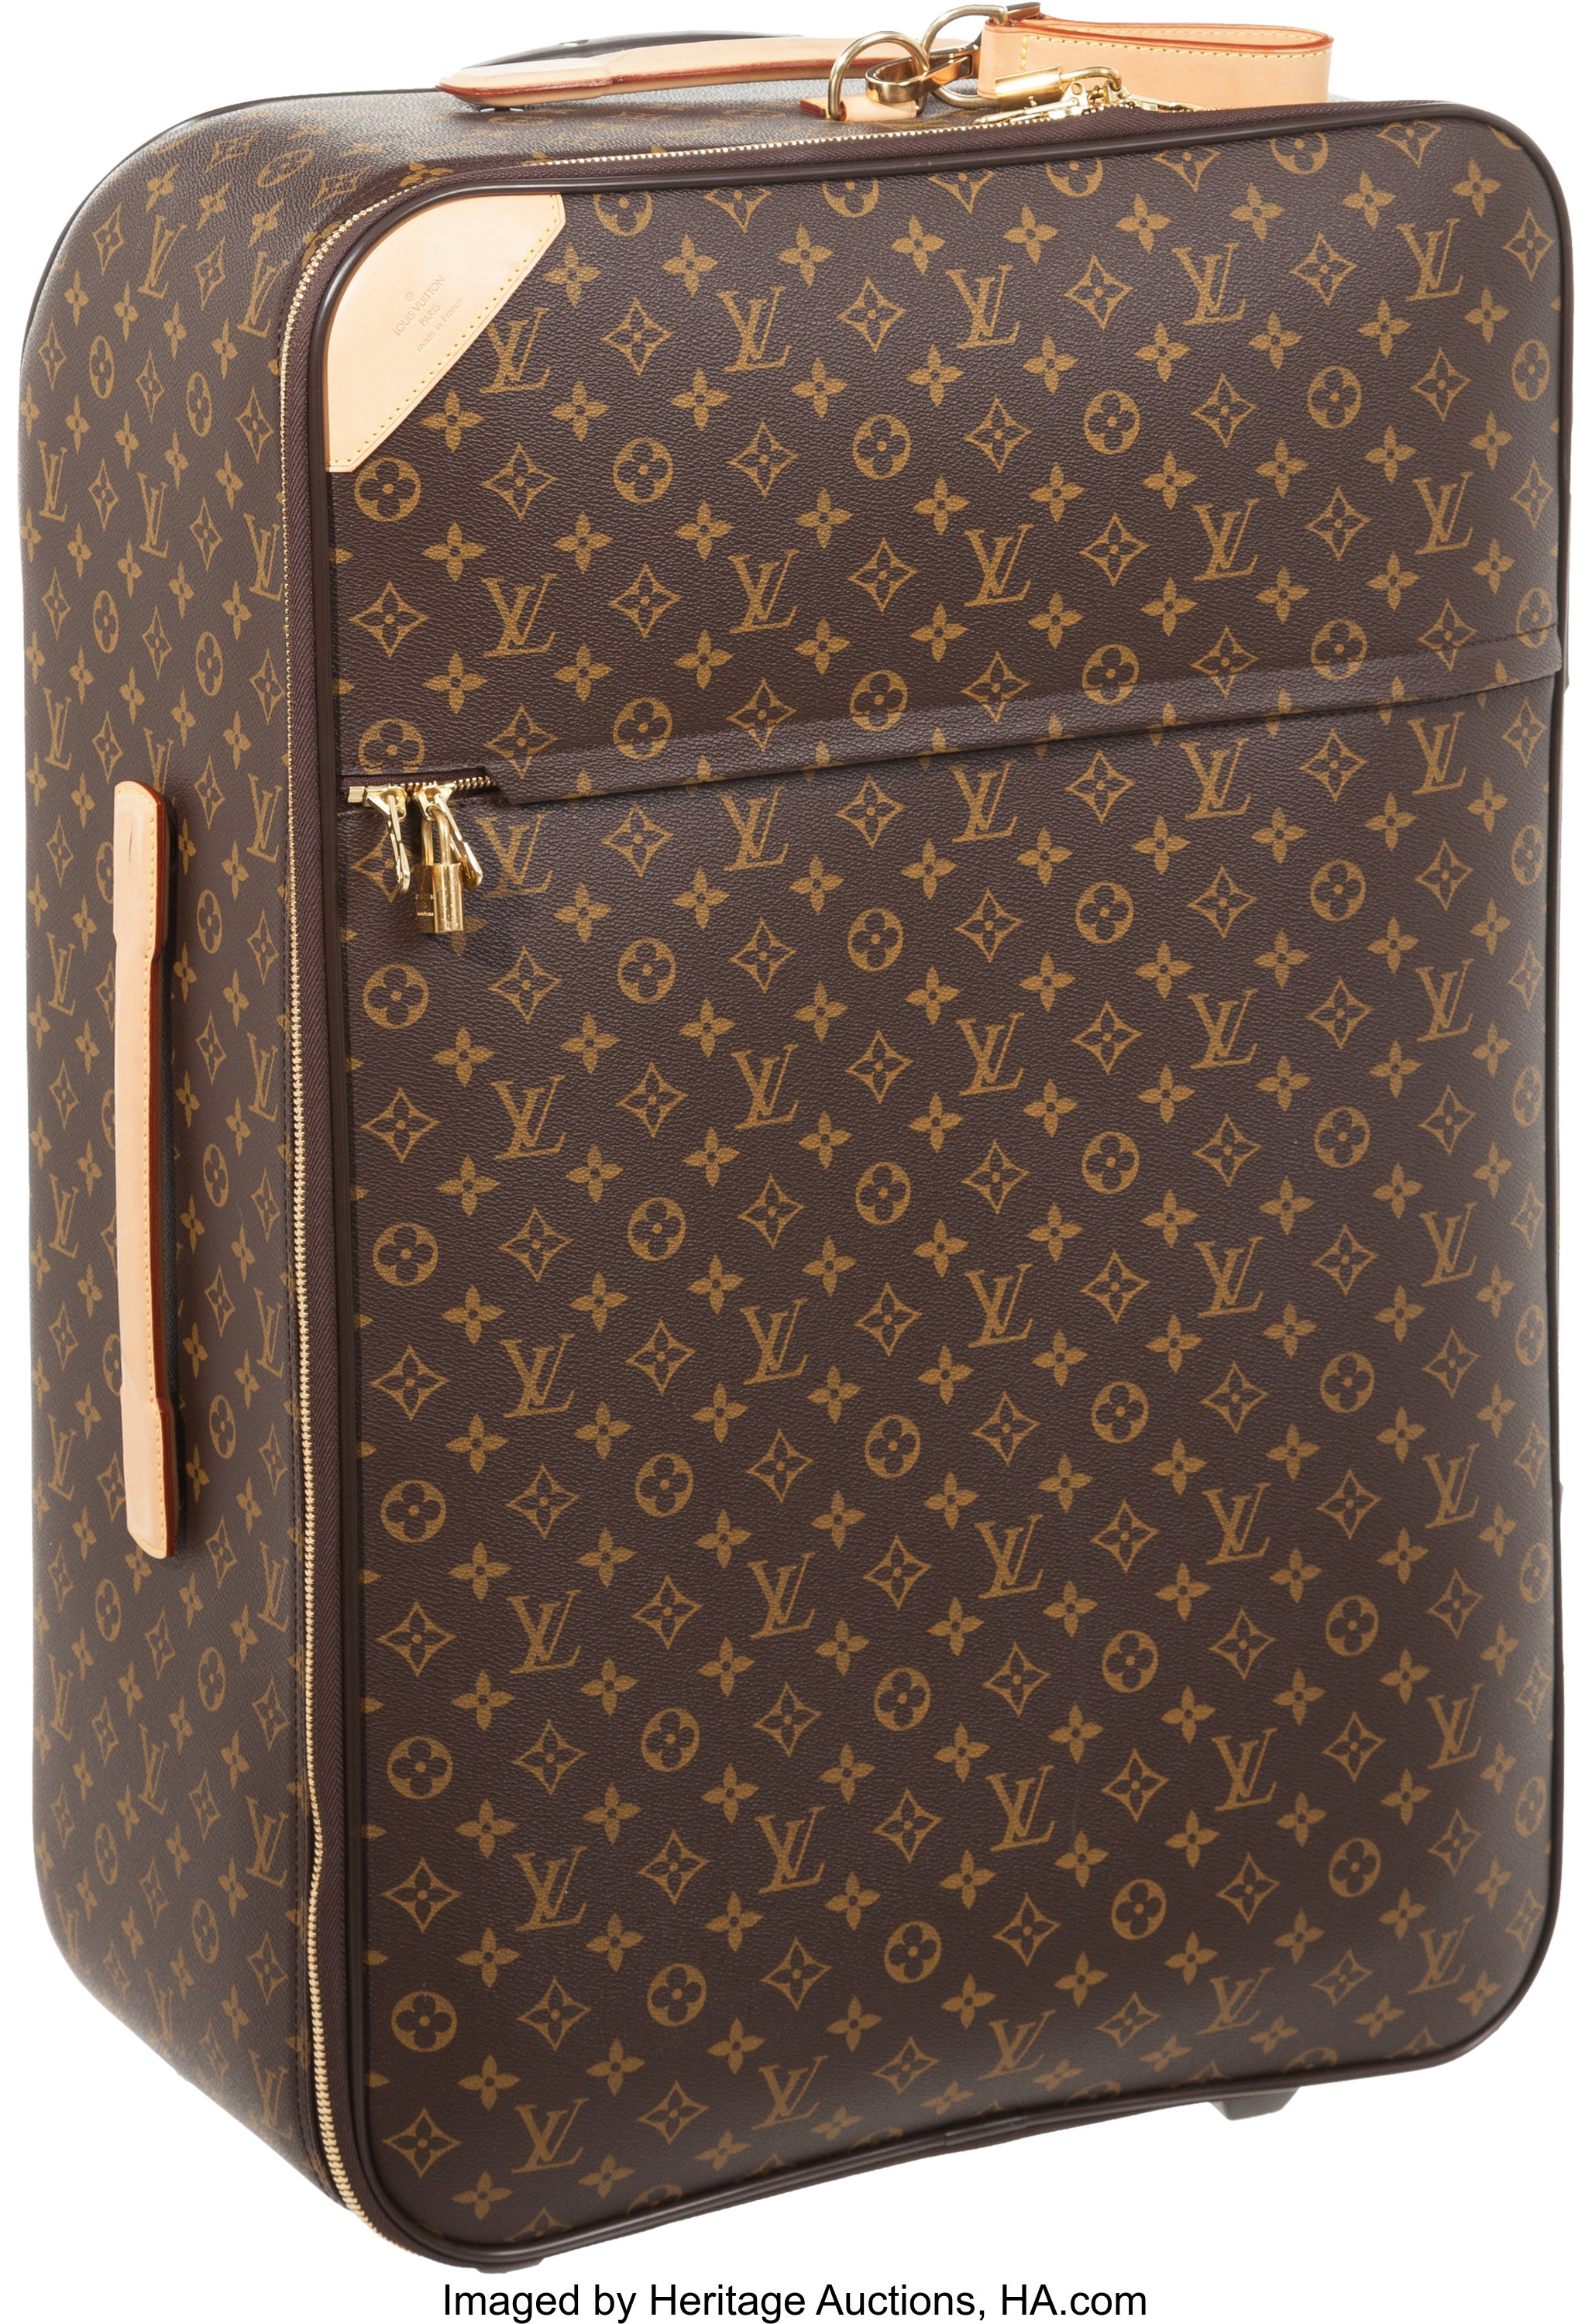 Sold at Auction: Louis Vuitton Sirius 70 Monogram Suitcase